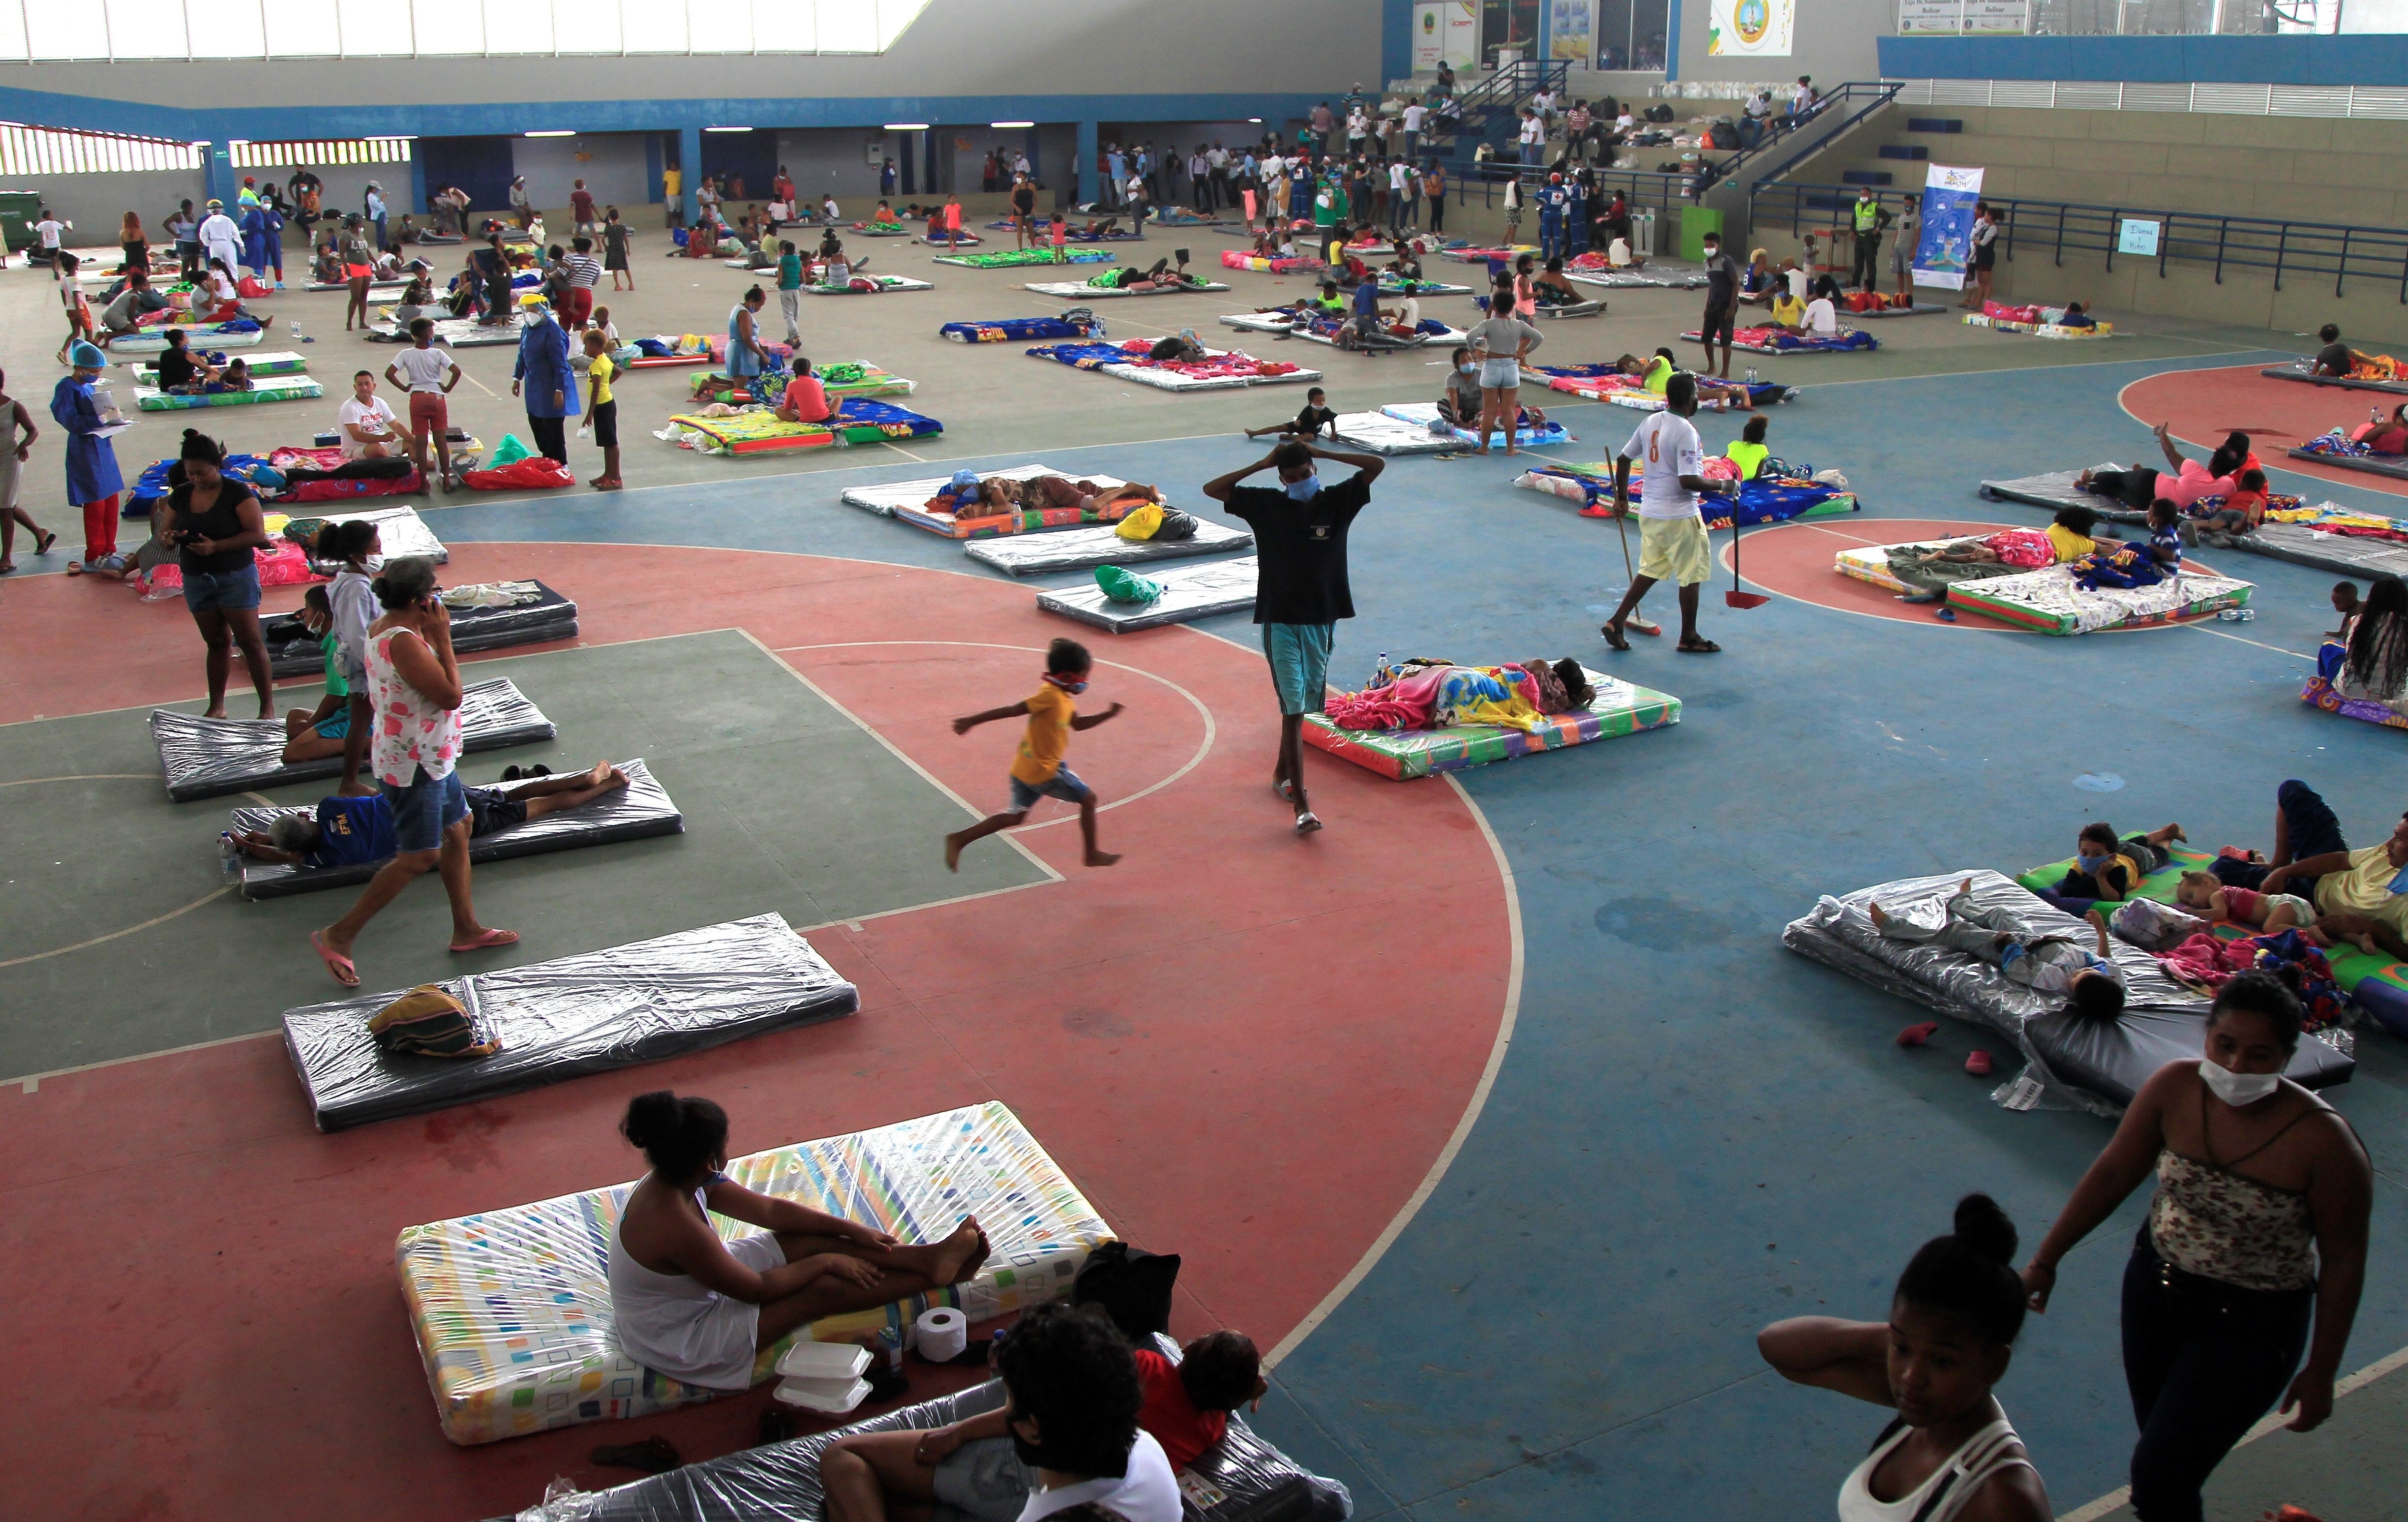 Cerca de 100 familias afectadas por las inundaciones causadas por el huracán Iota se refugian hoy en un albergue instalado en el Coliseo de Combate de Cartagena, en Cartagena (Colombia). EFE/RICARDO MALDONADO ROZO
